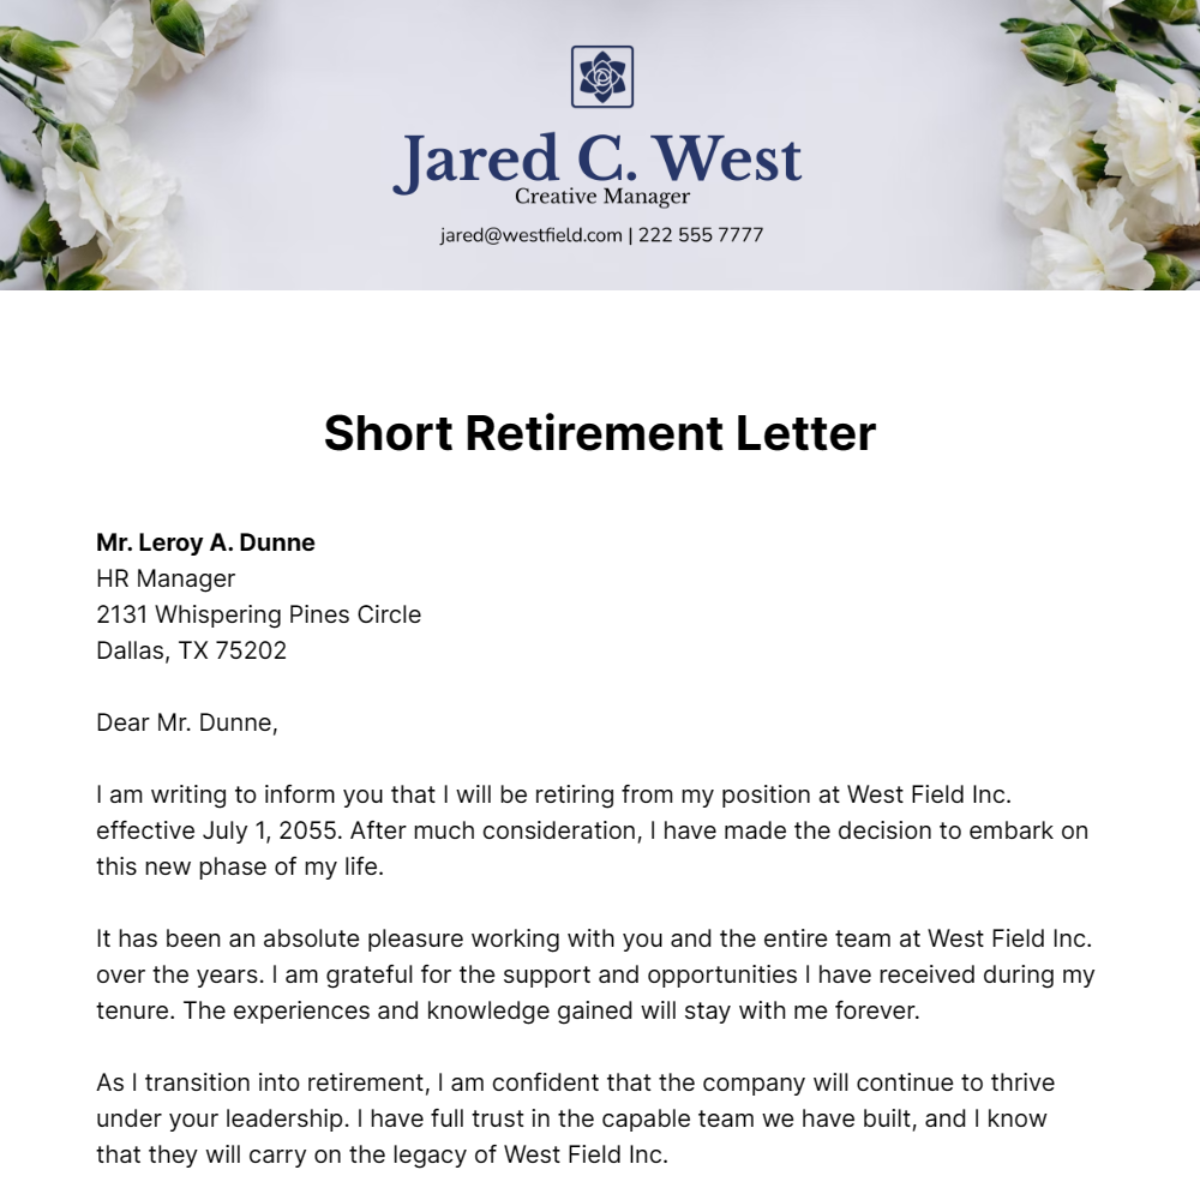 Short Retirement Letter Template